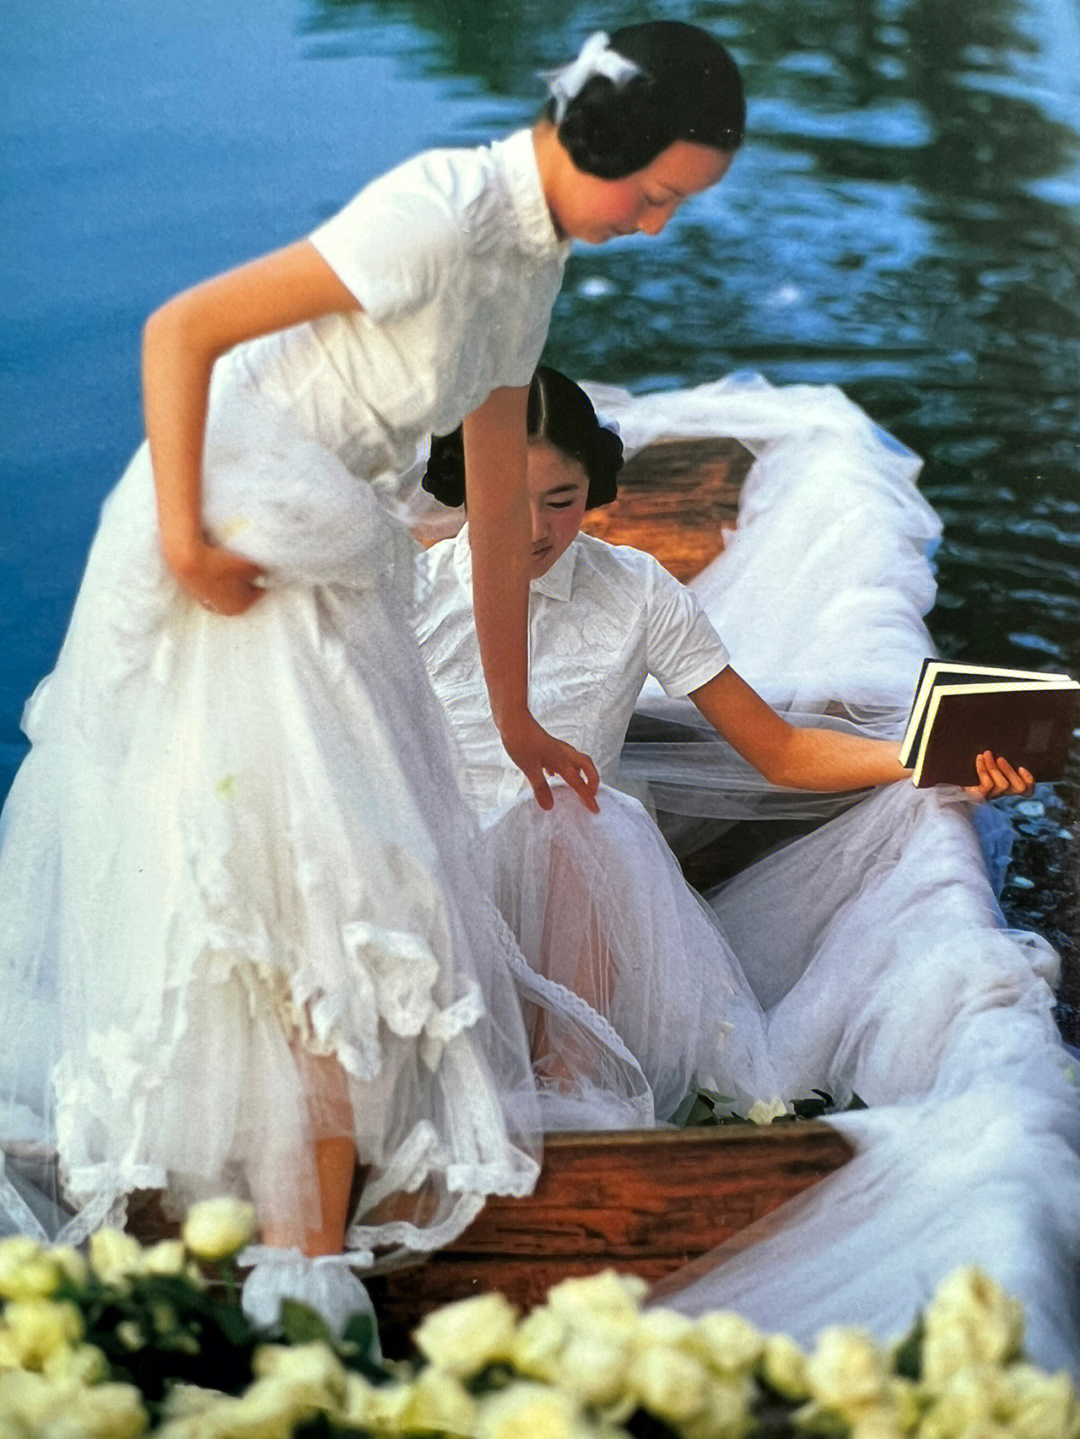 淑女屋天鹅湖系列灵感来源于柴可夫斯基笔下的《天鹅湖》,天鹅体态